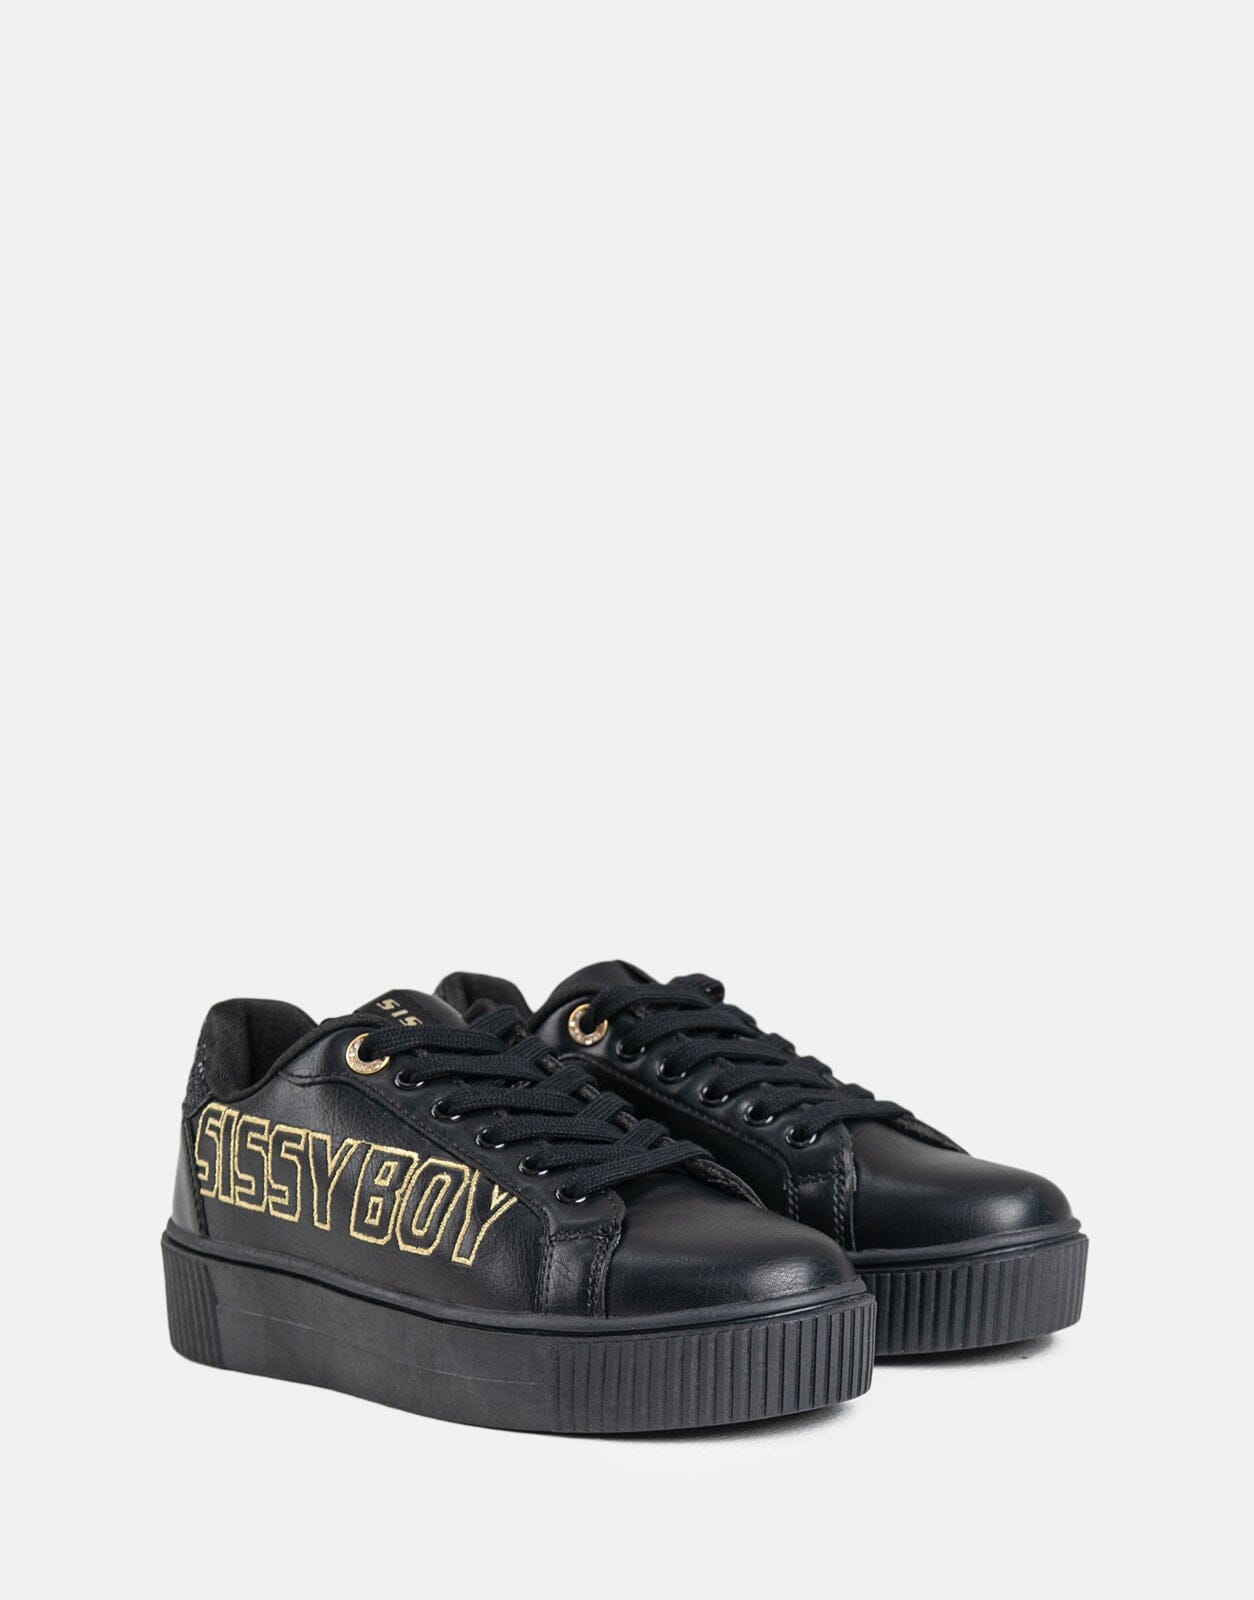 Sissy Boy Side Gold Font Black Sneaker - Subwear